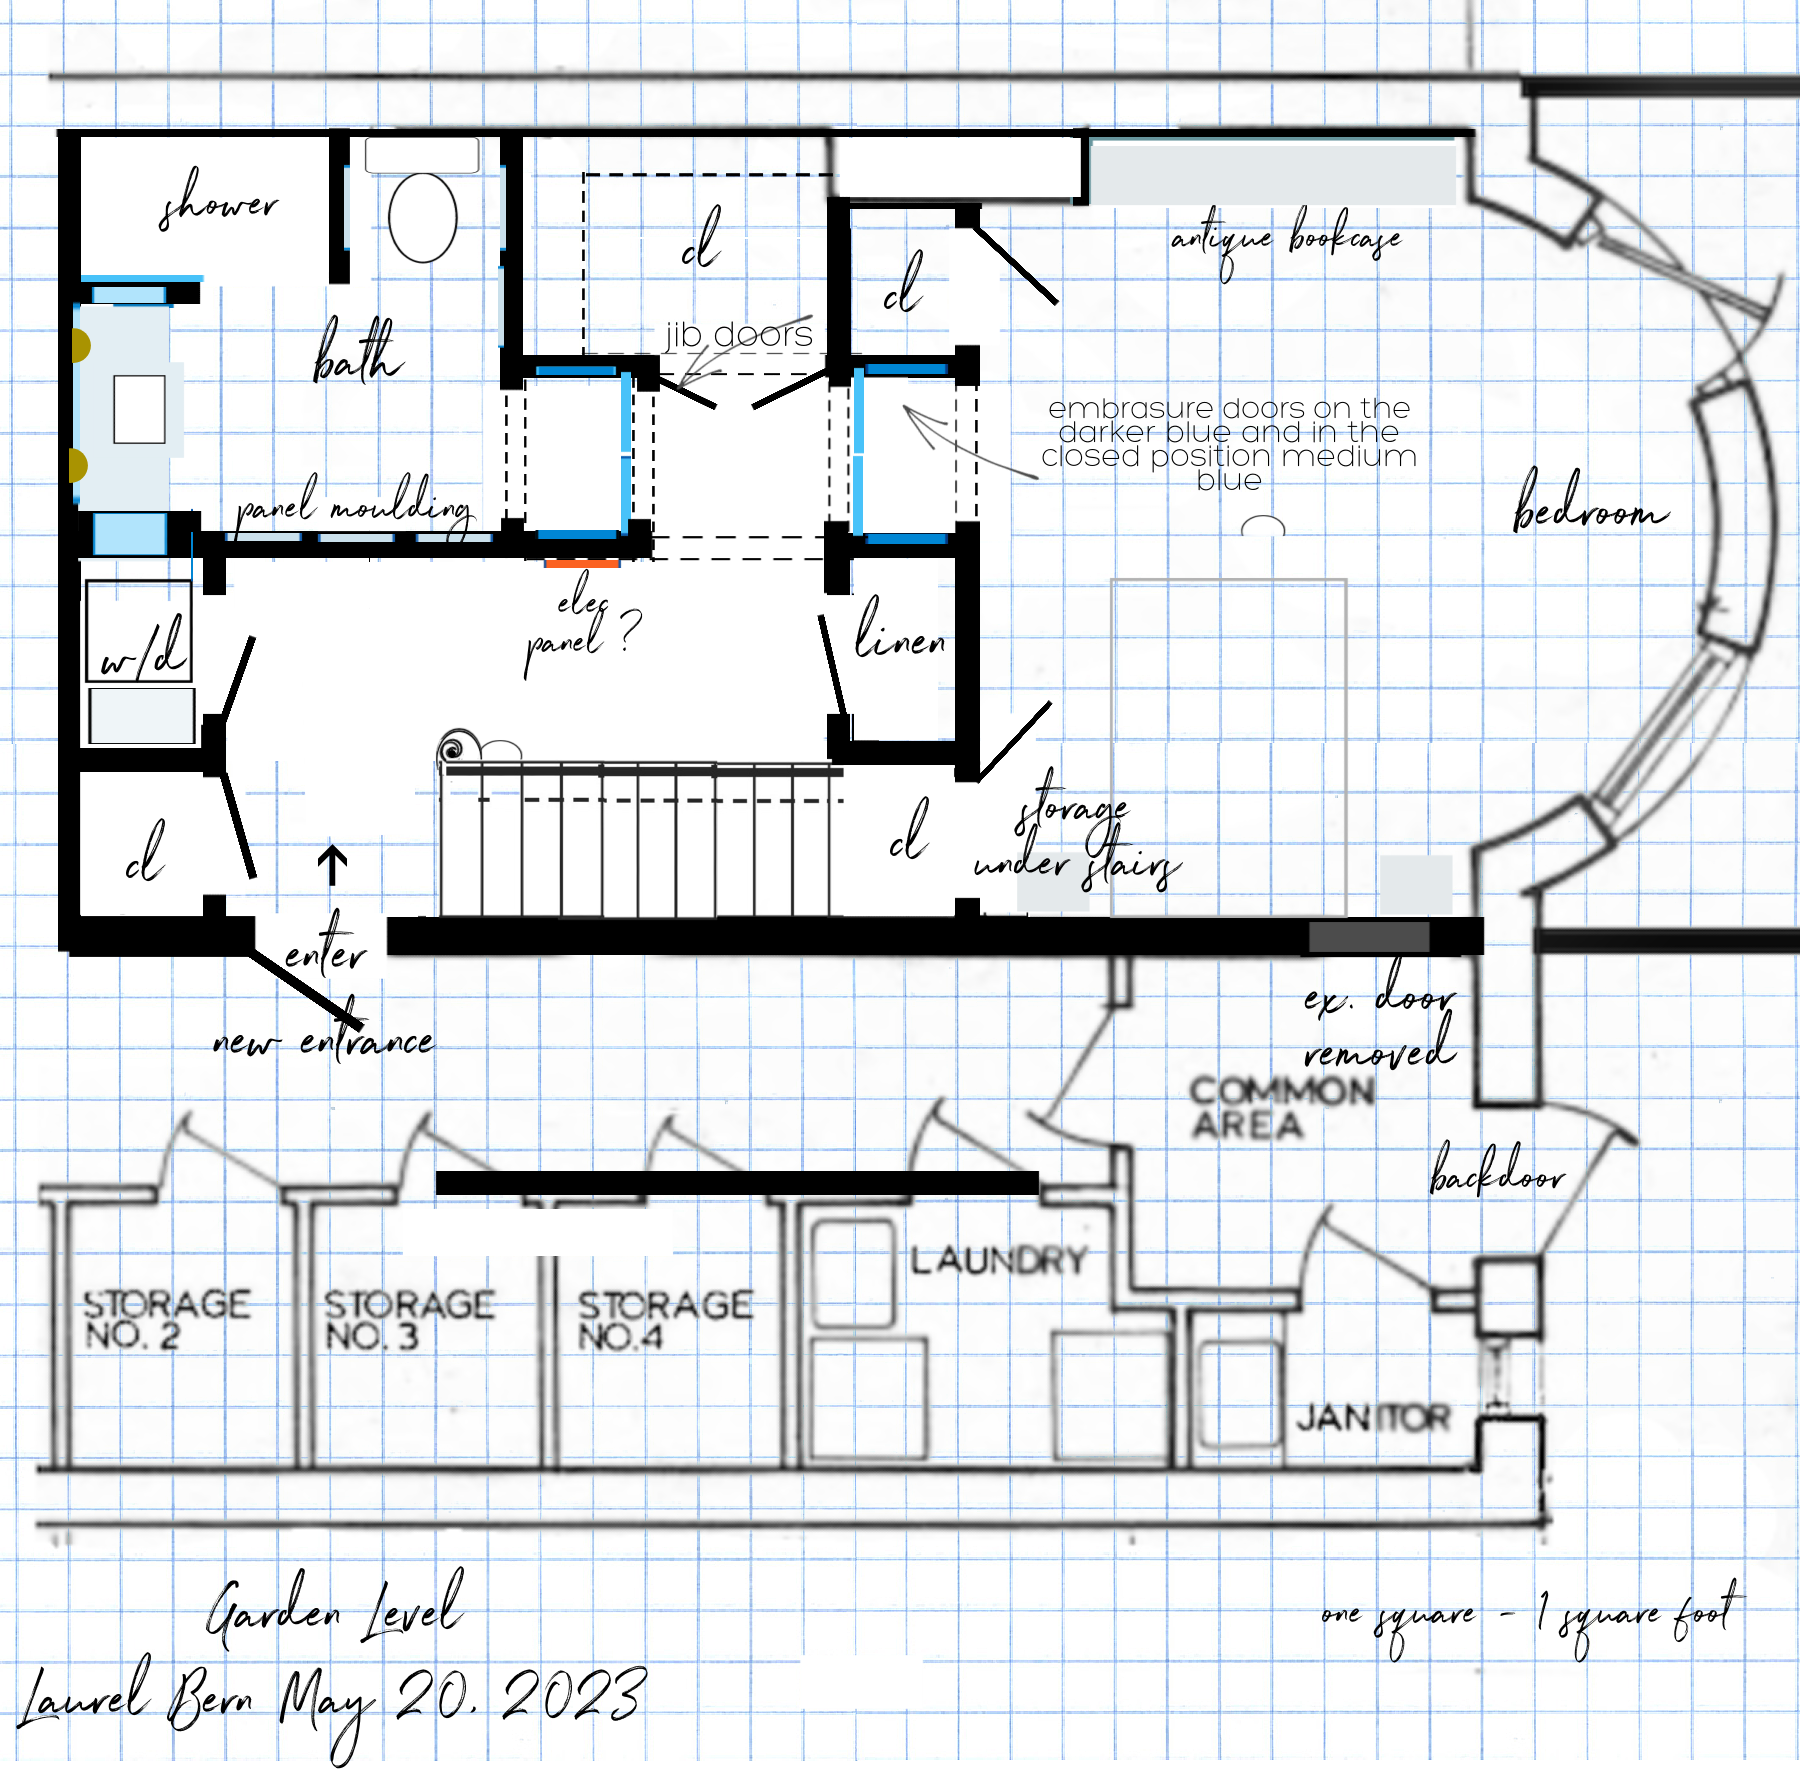 Straight run stairs Garden Level May 20, 2023 proposed plan bedroom suite hidden door panels - new hallway